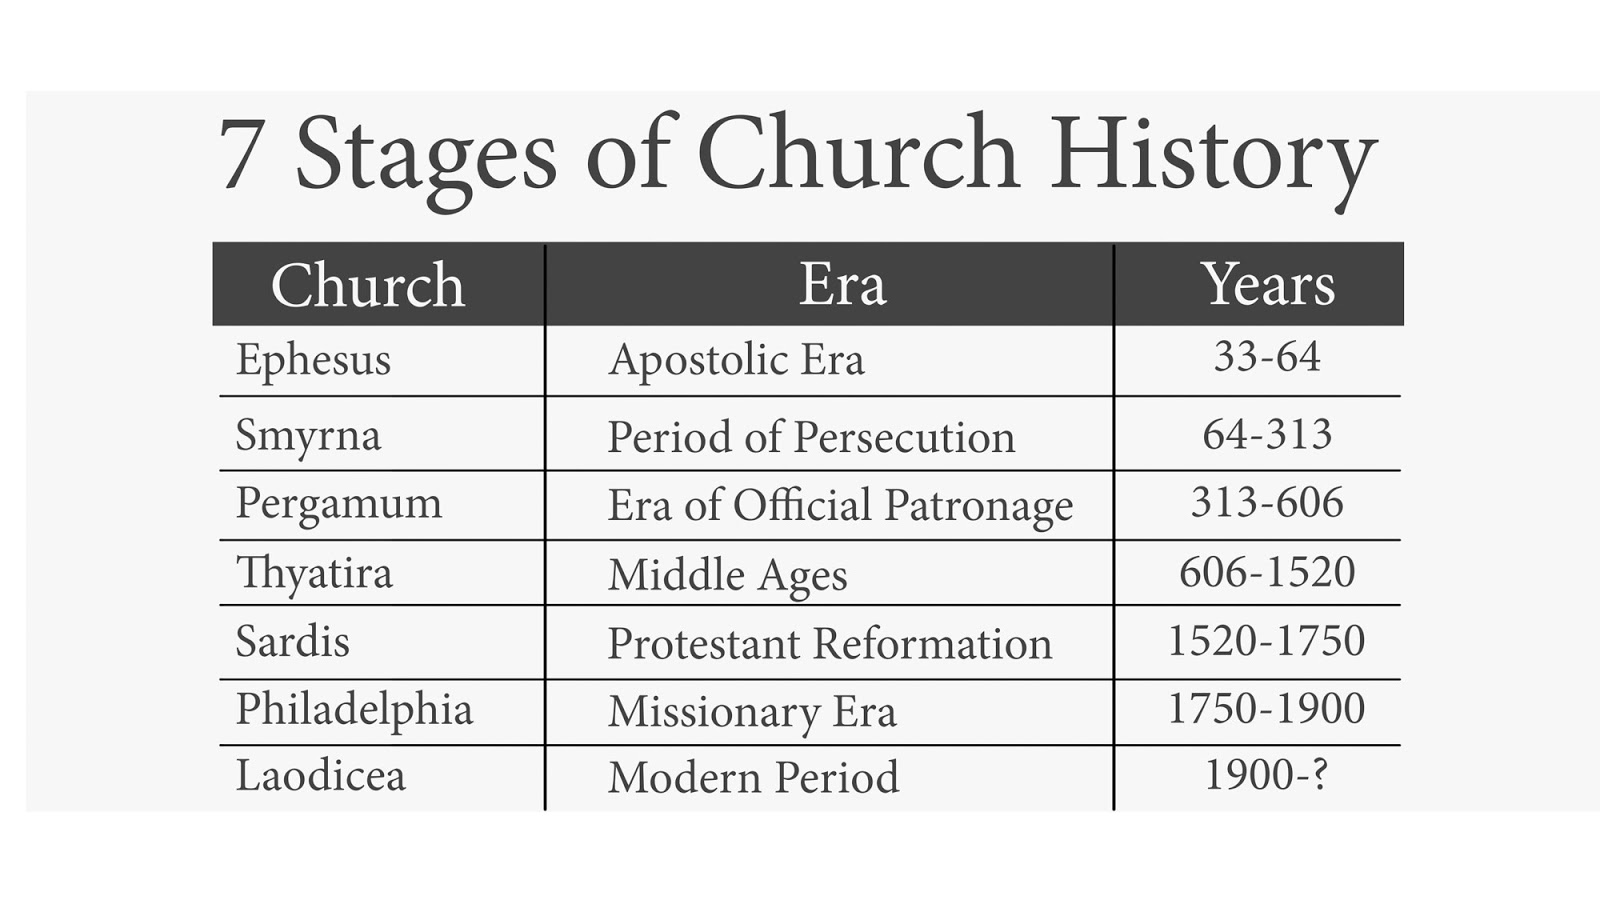 Revelation 2 3 Seven Churches Chart